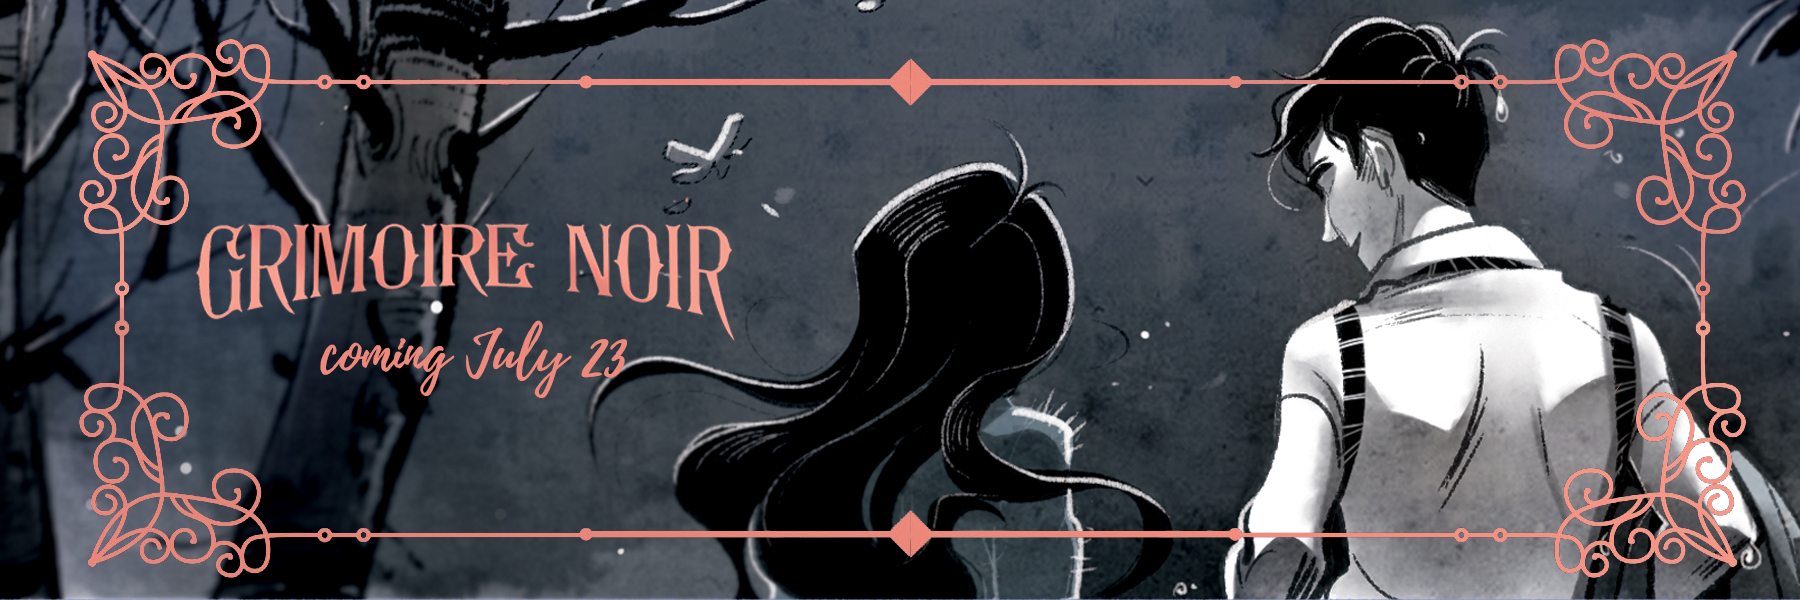 Grimoire Noir, coming July 23